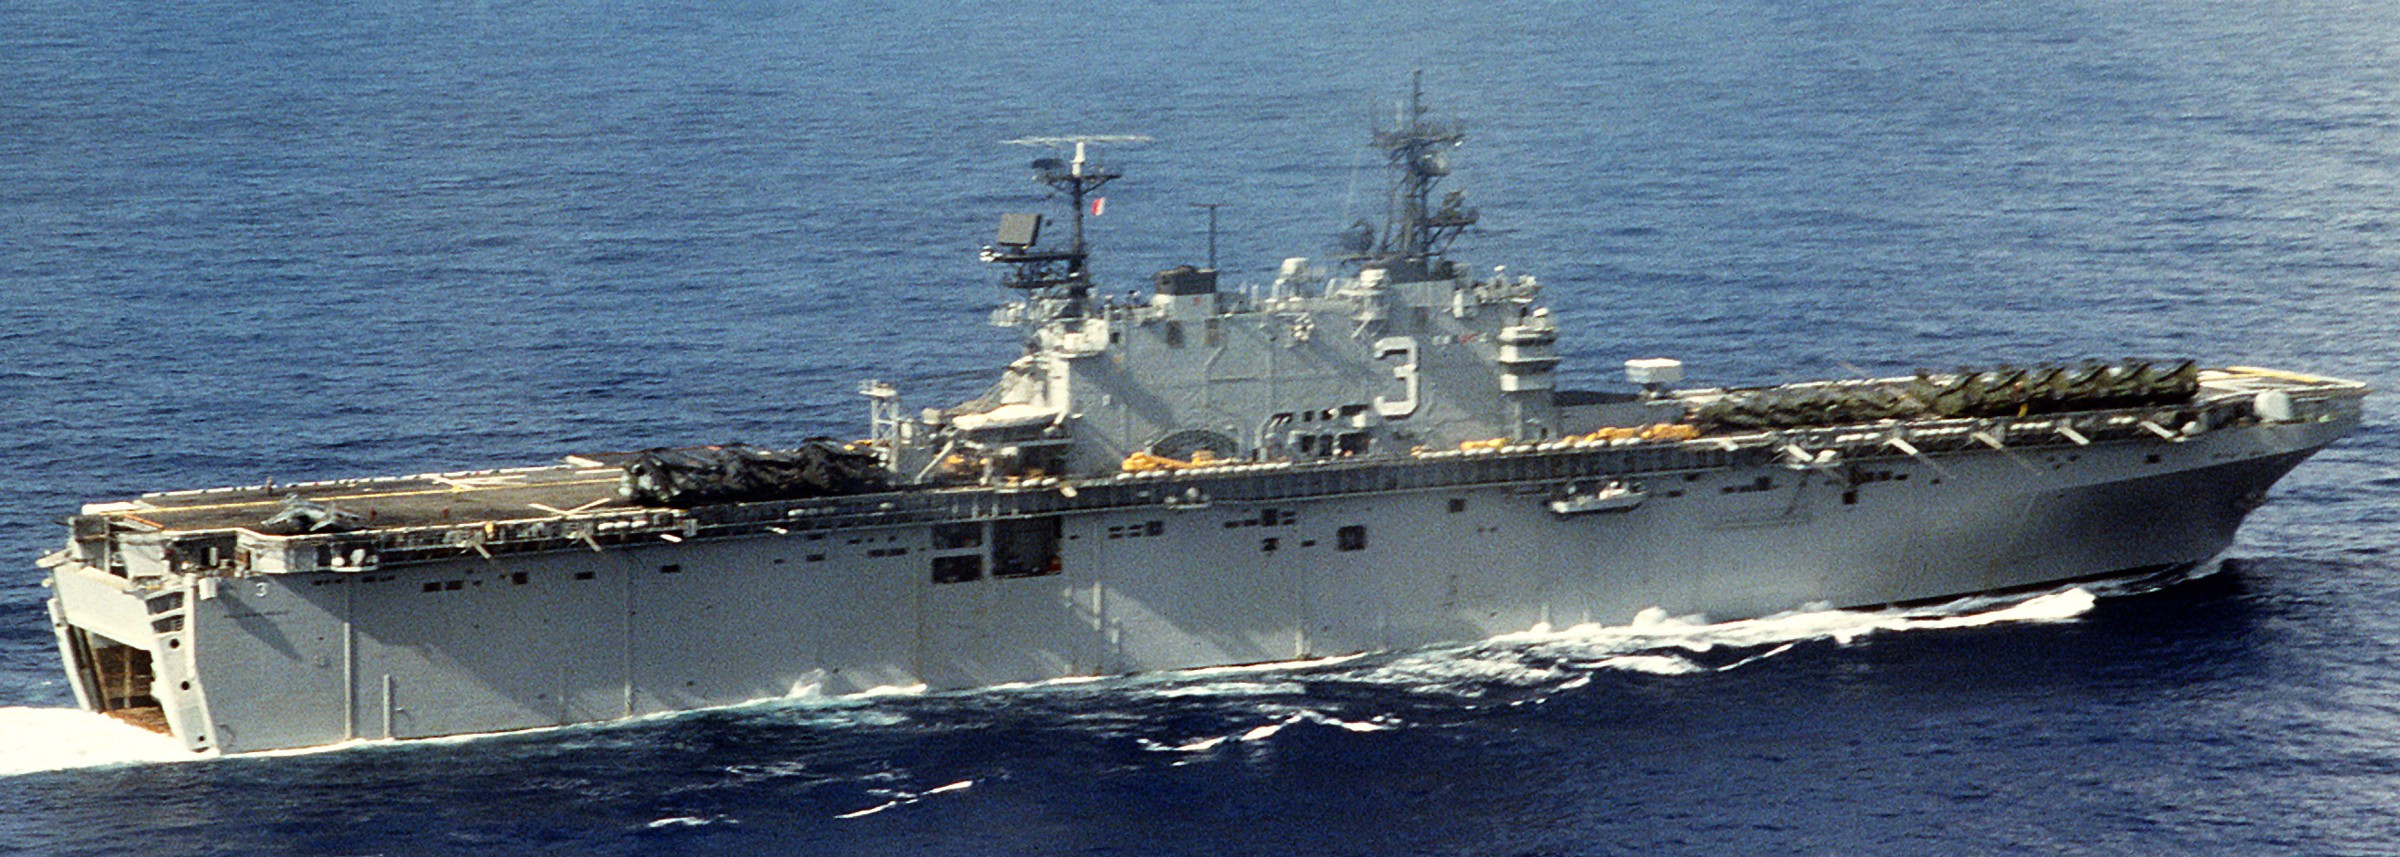 lha-3 uss belleau wood tarawa class amphibious assault ship us navy 21